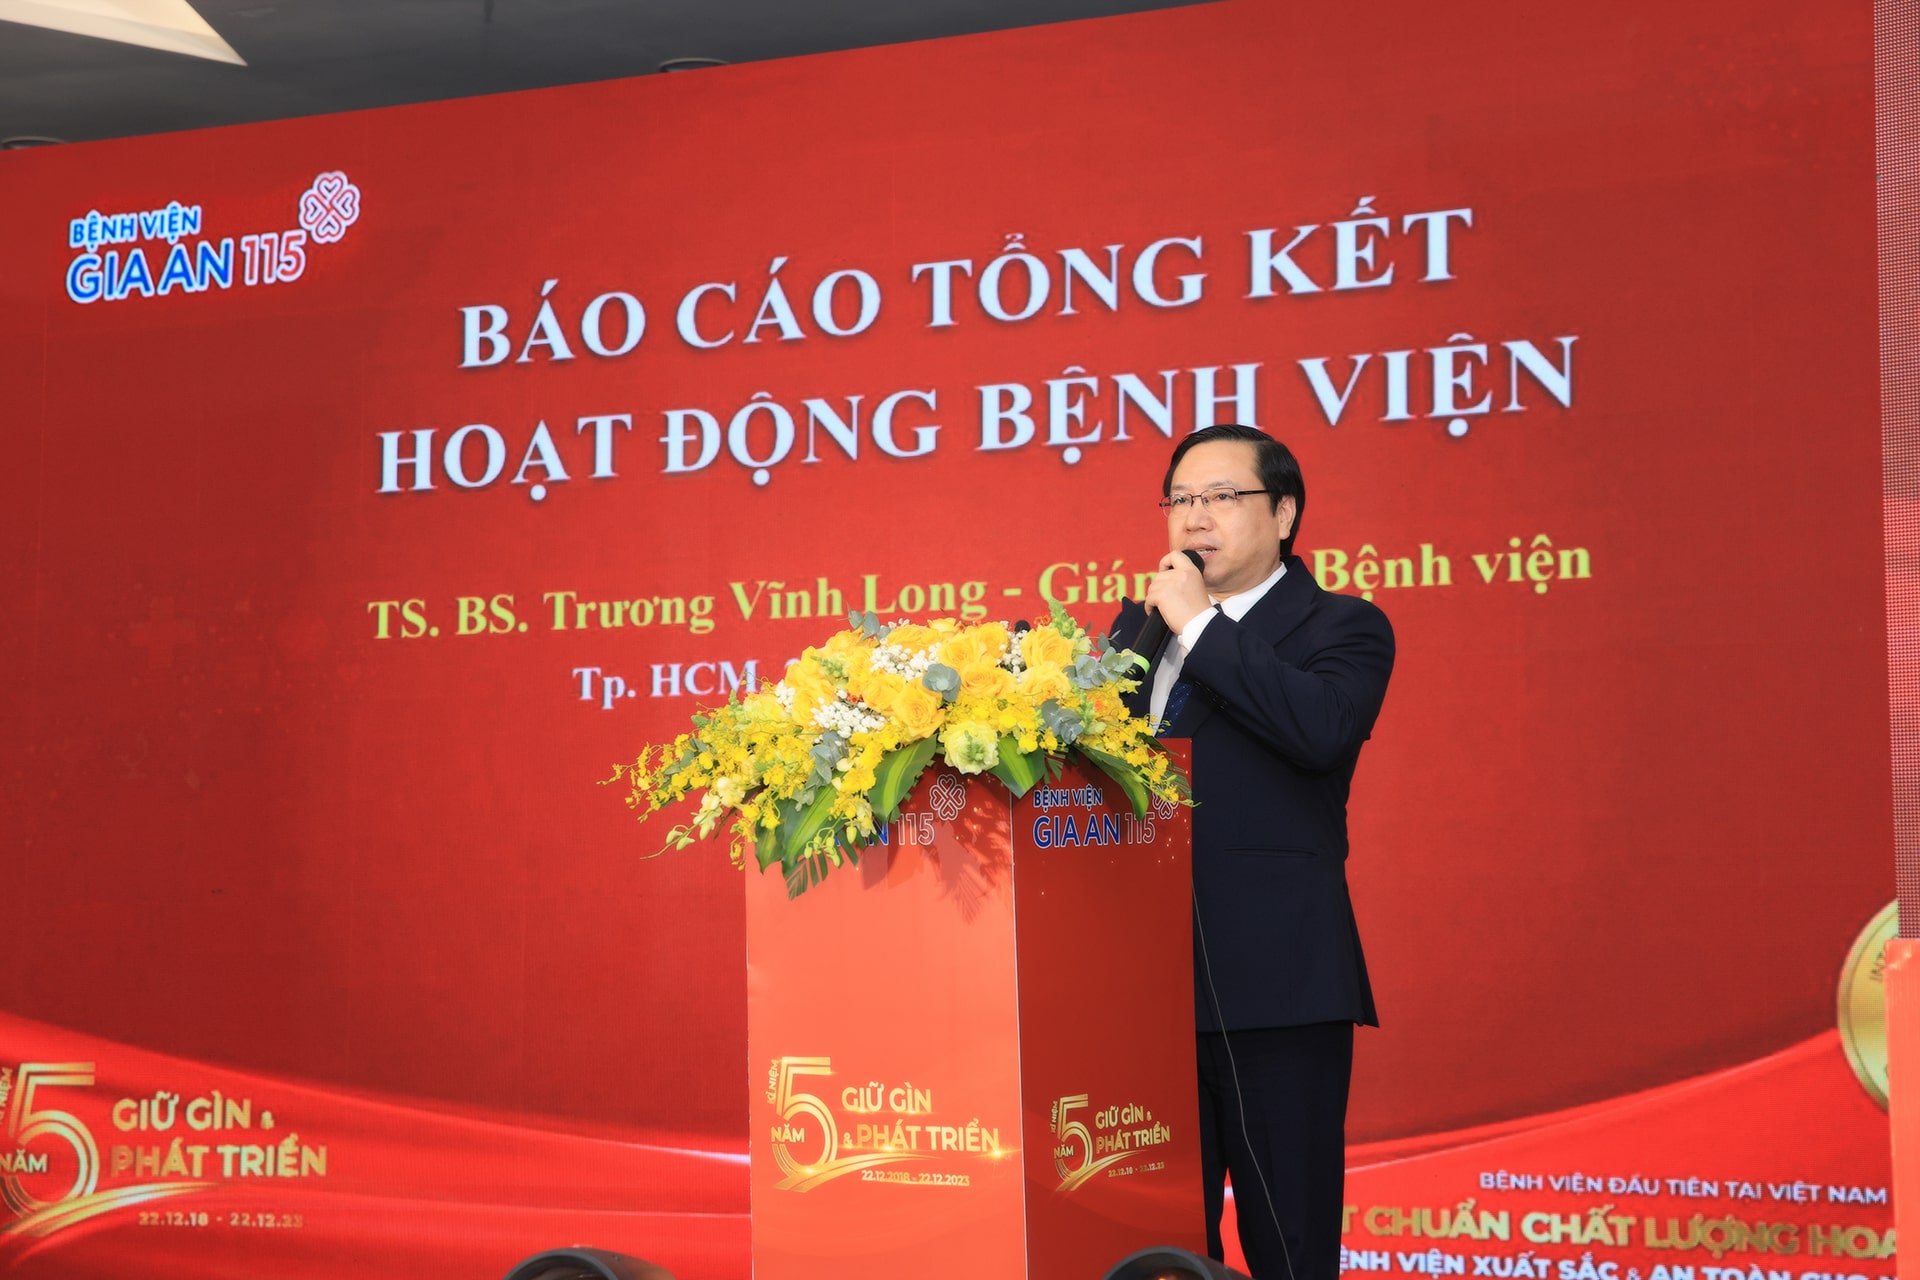 TS.BS. Trương Vĩnh Long - Giám đốc Bệnh viện Gia An 115 phát biểu tại buổi lễ